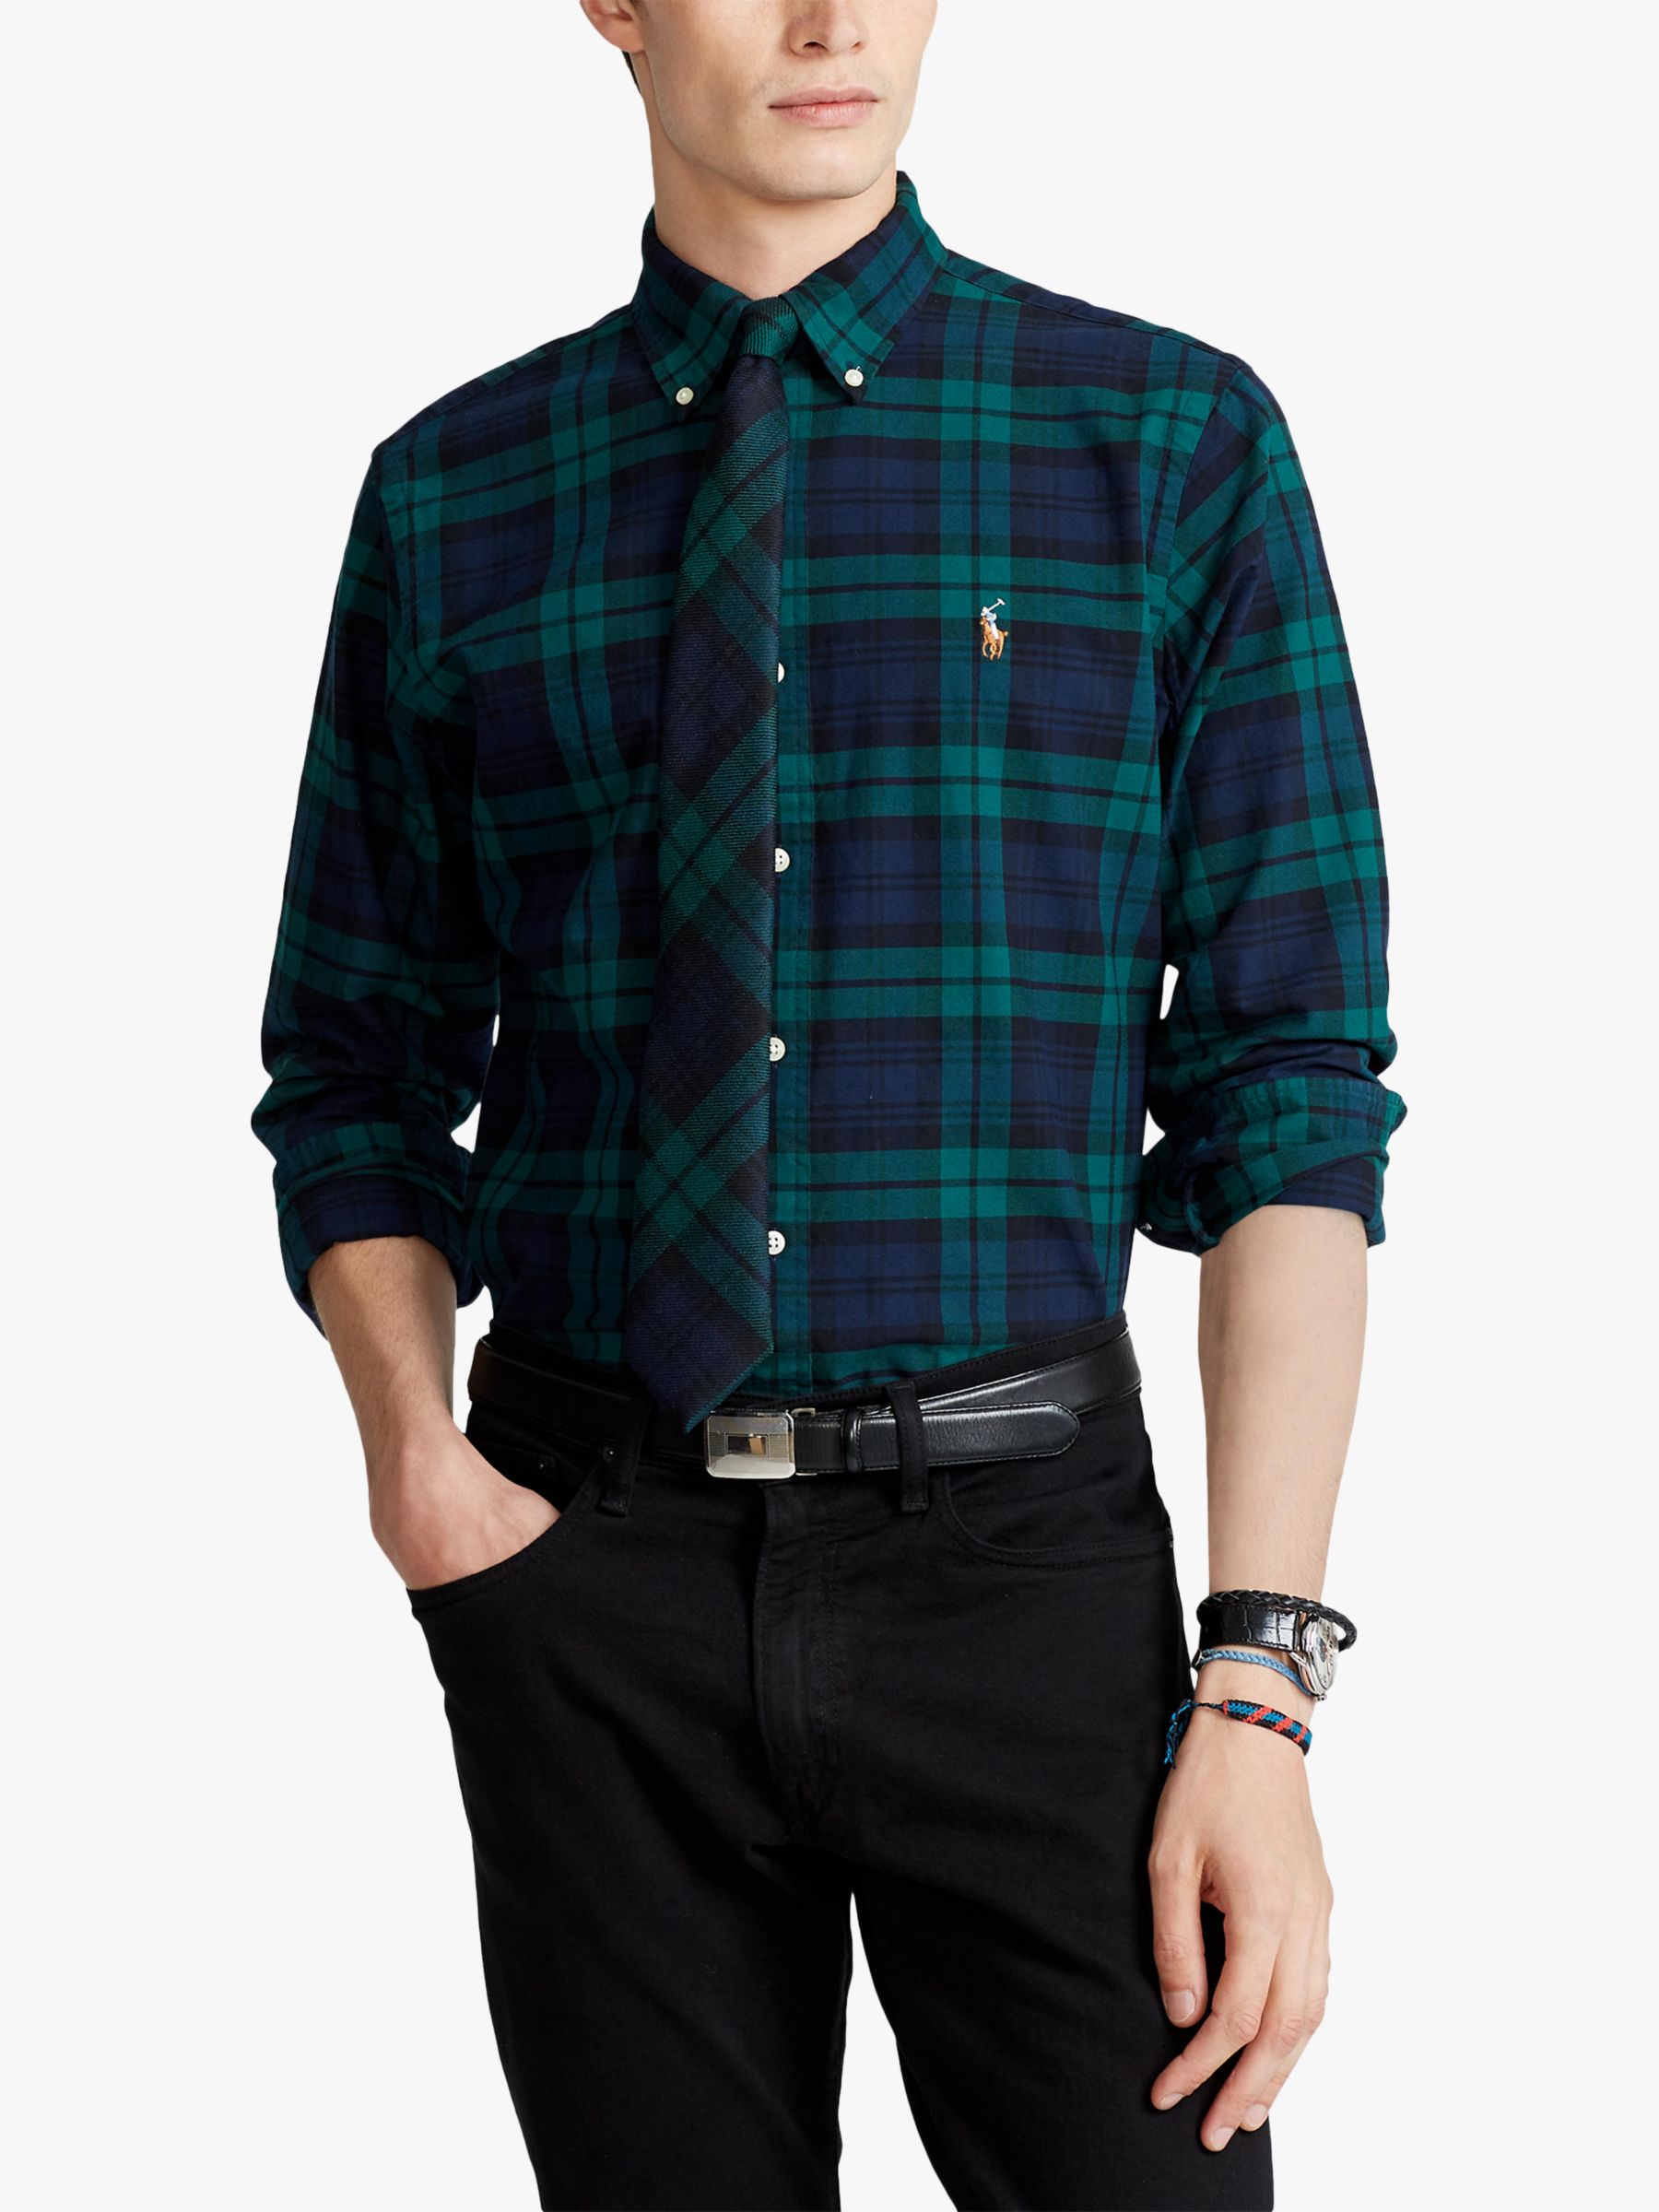 Leraar op school ingesteld Kan niet Polo Ralph Lauren Slim Fit Check Oxford Shirt, Green/Navy